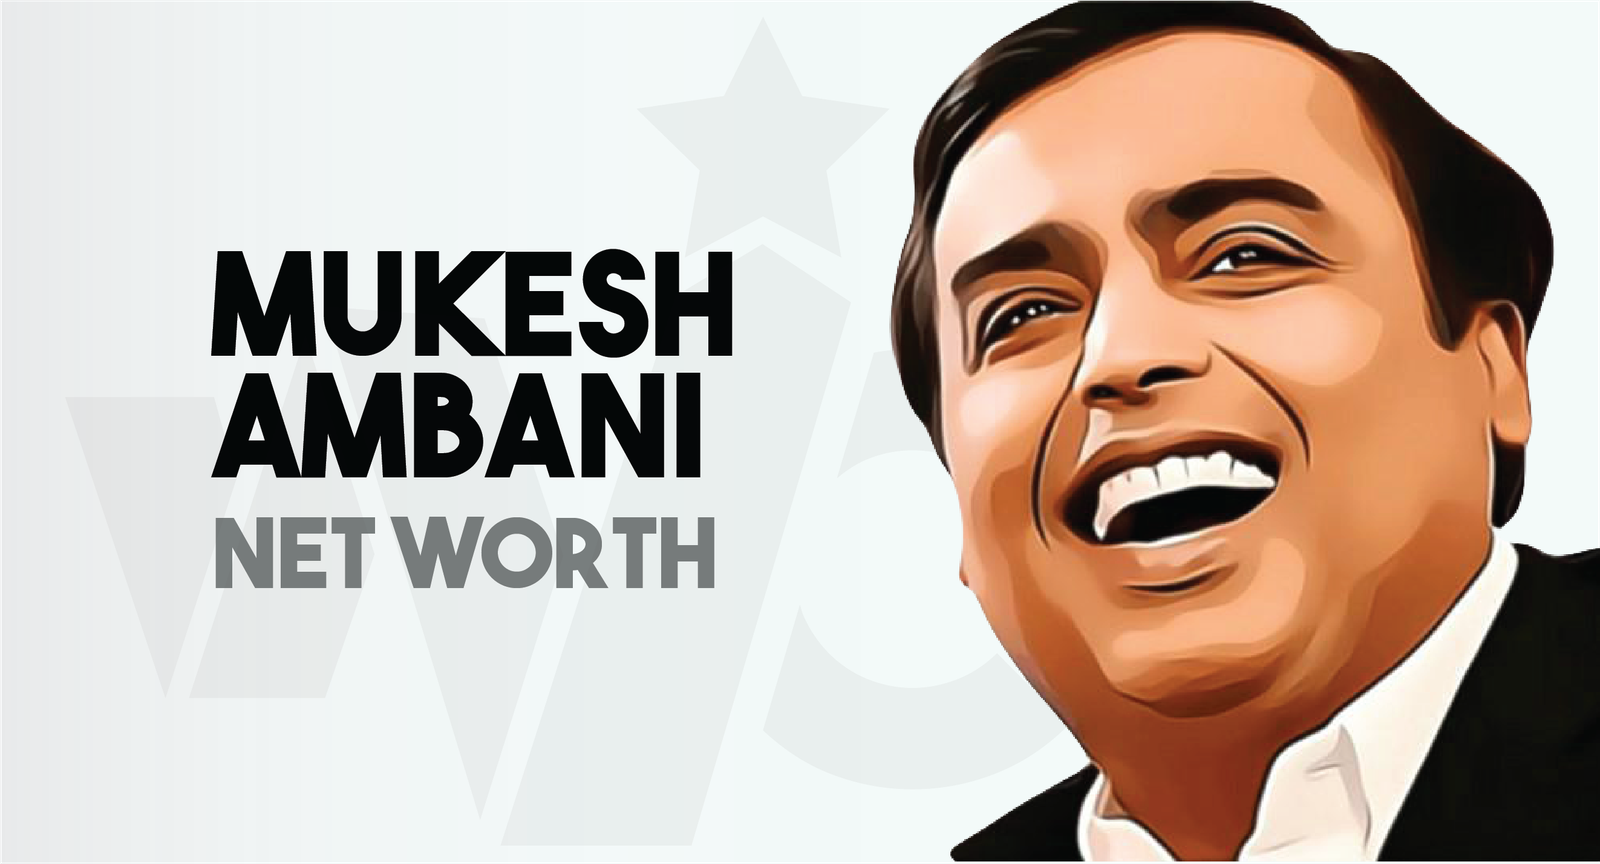 Mukesh Ambani Net Worth Makes Him World’s Richest Person